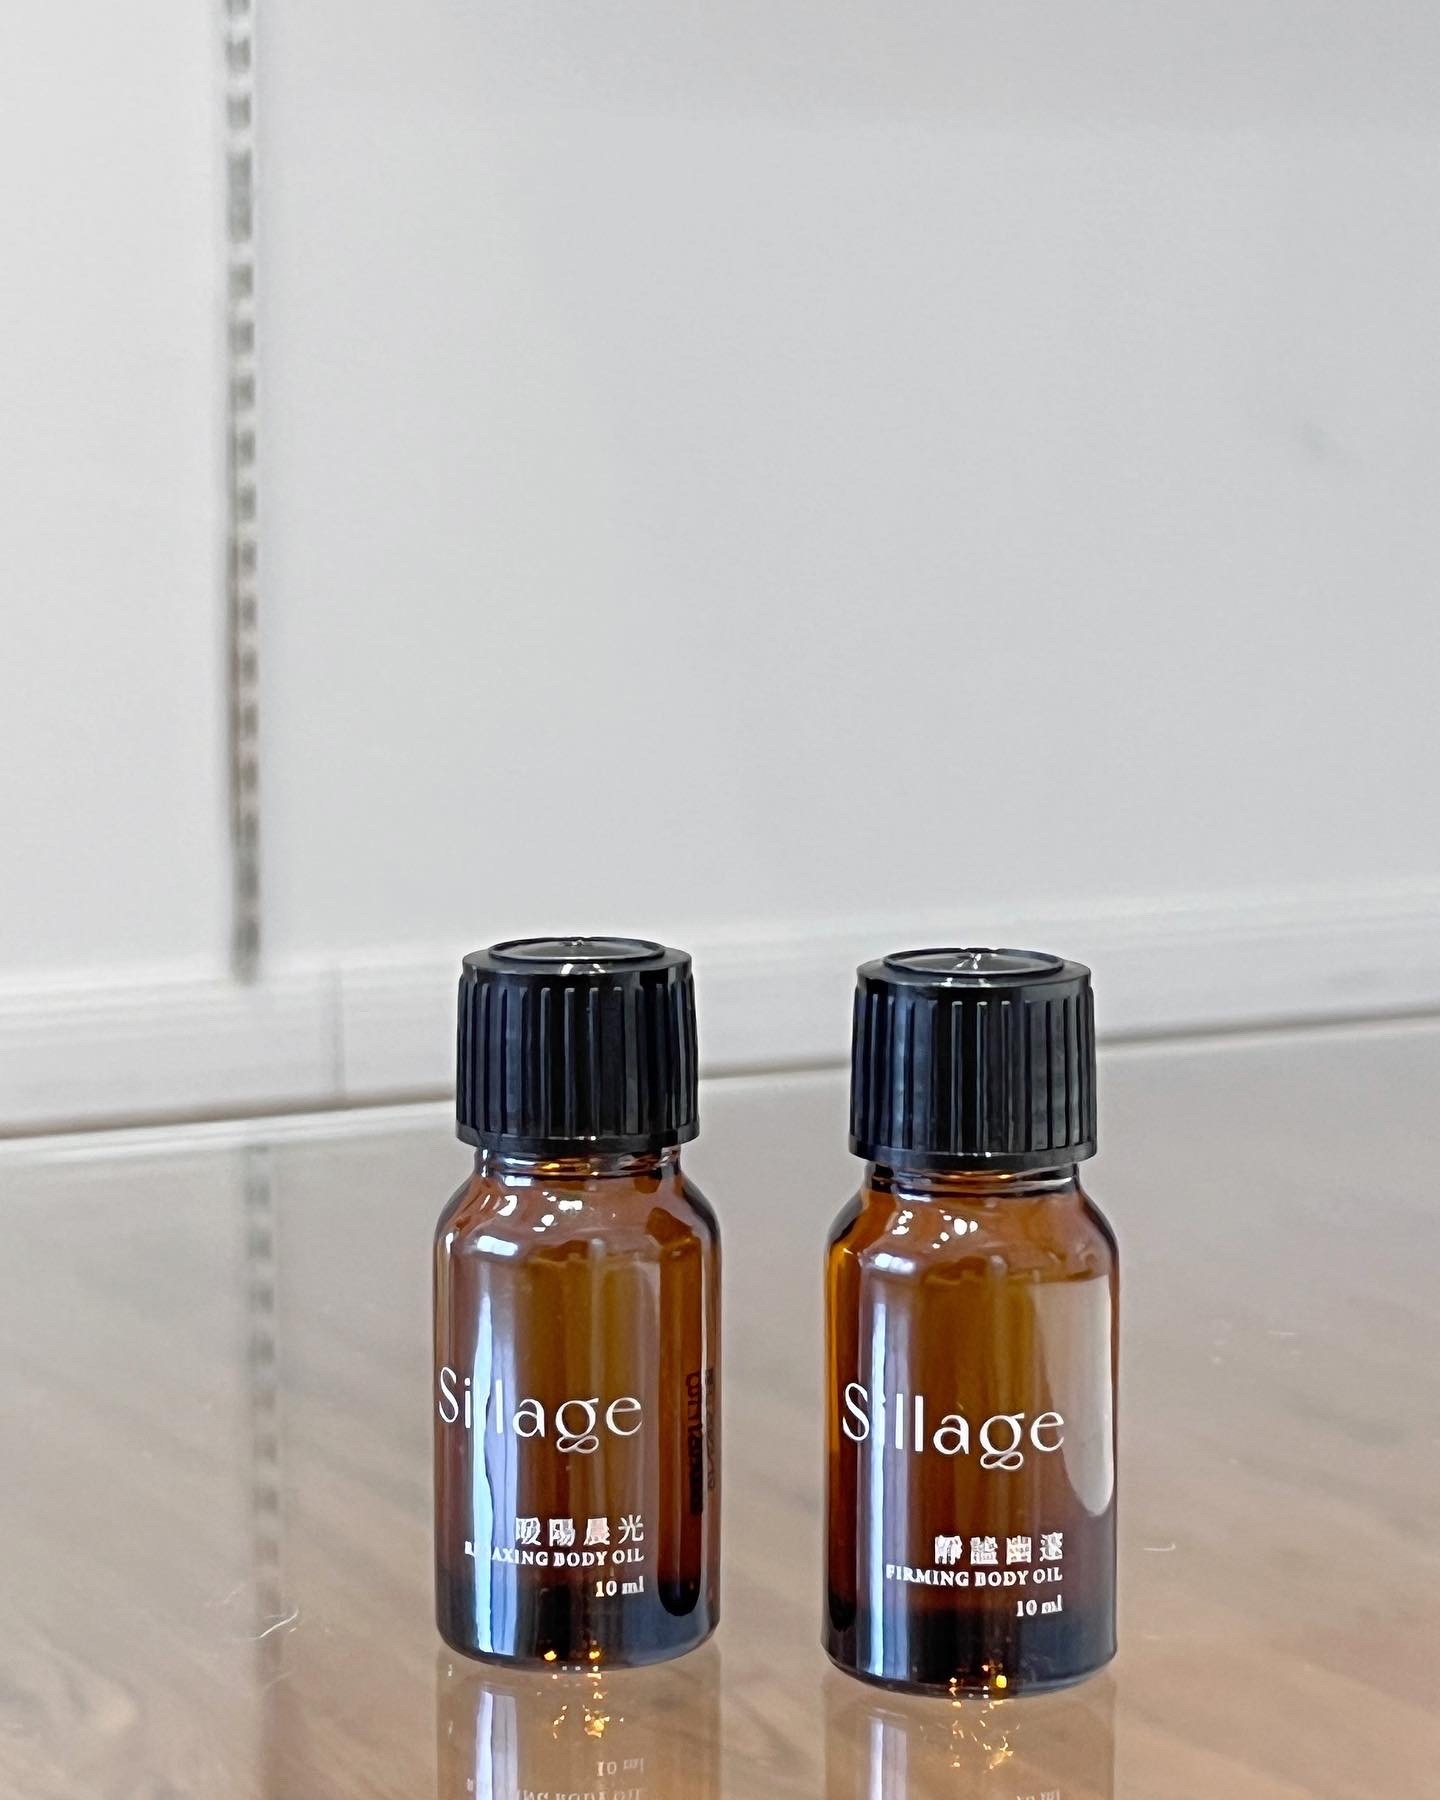 林三益「sillage 香氛身體保養系列」是喜歡的草木調香氛